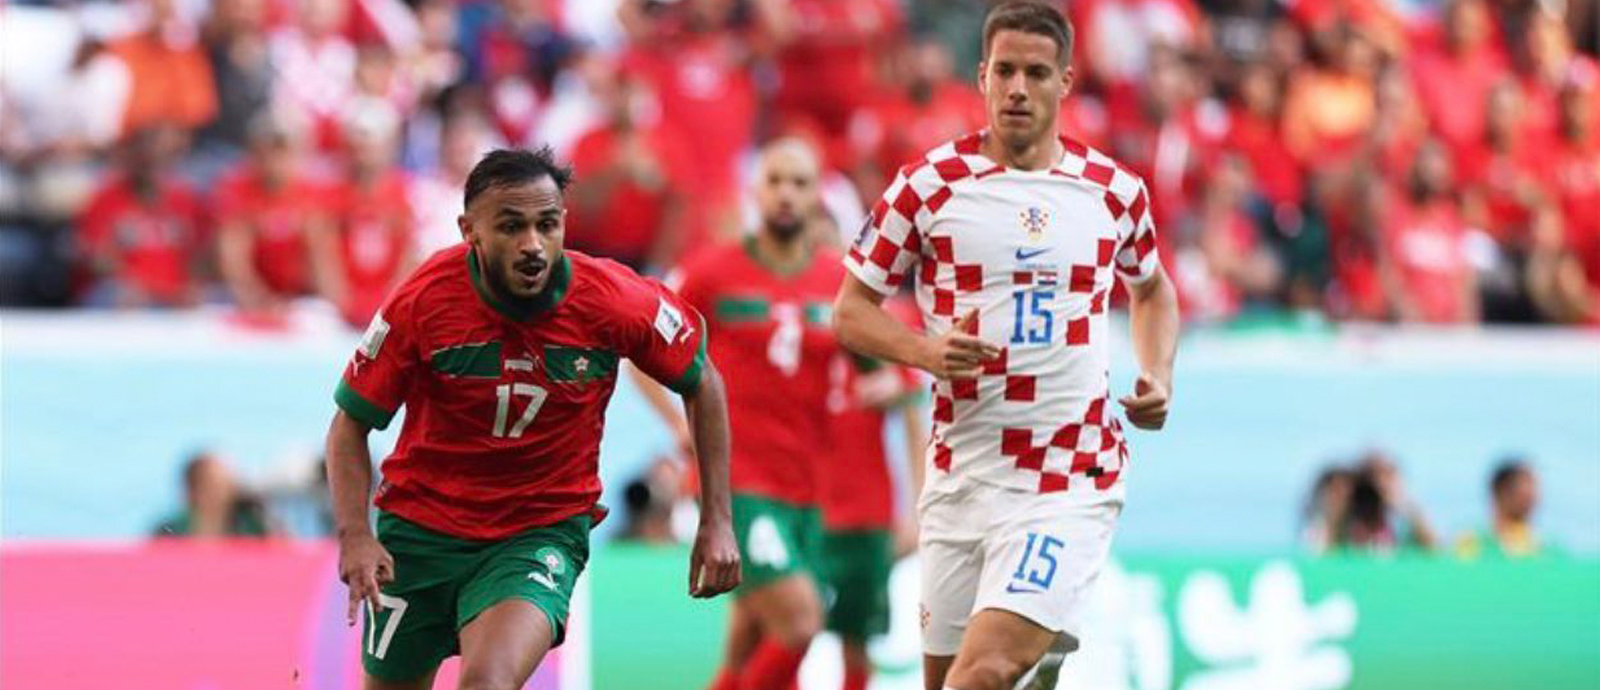 المنتخب المغربي يتعادل مع نظيره الكرواتي بدون أهداف